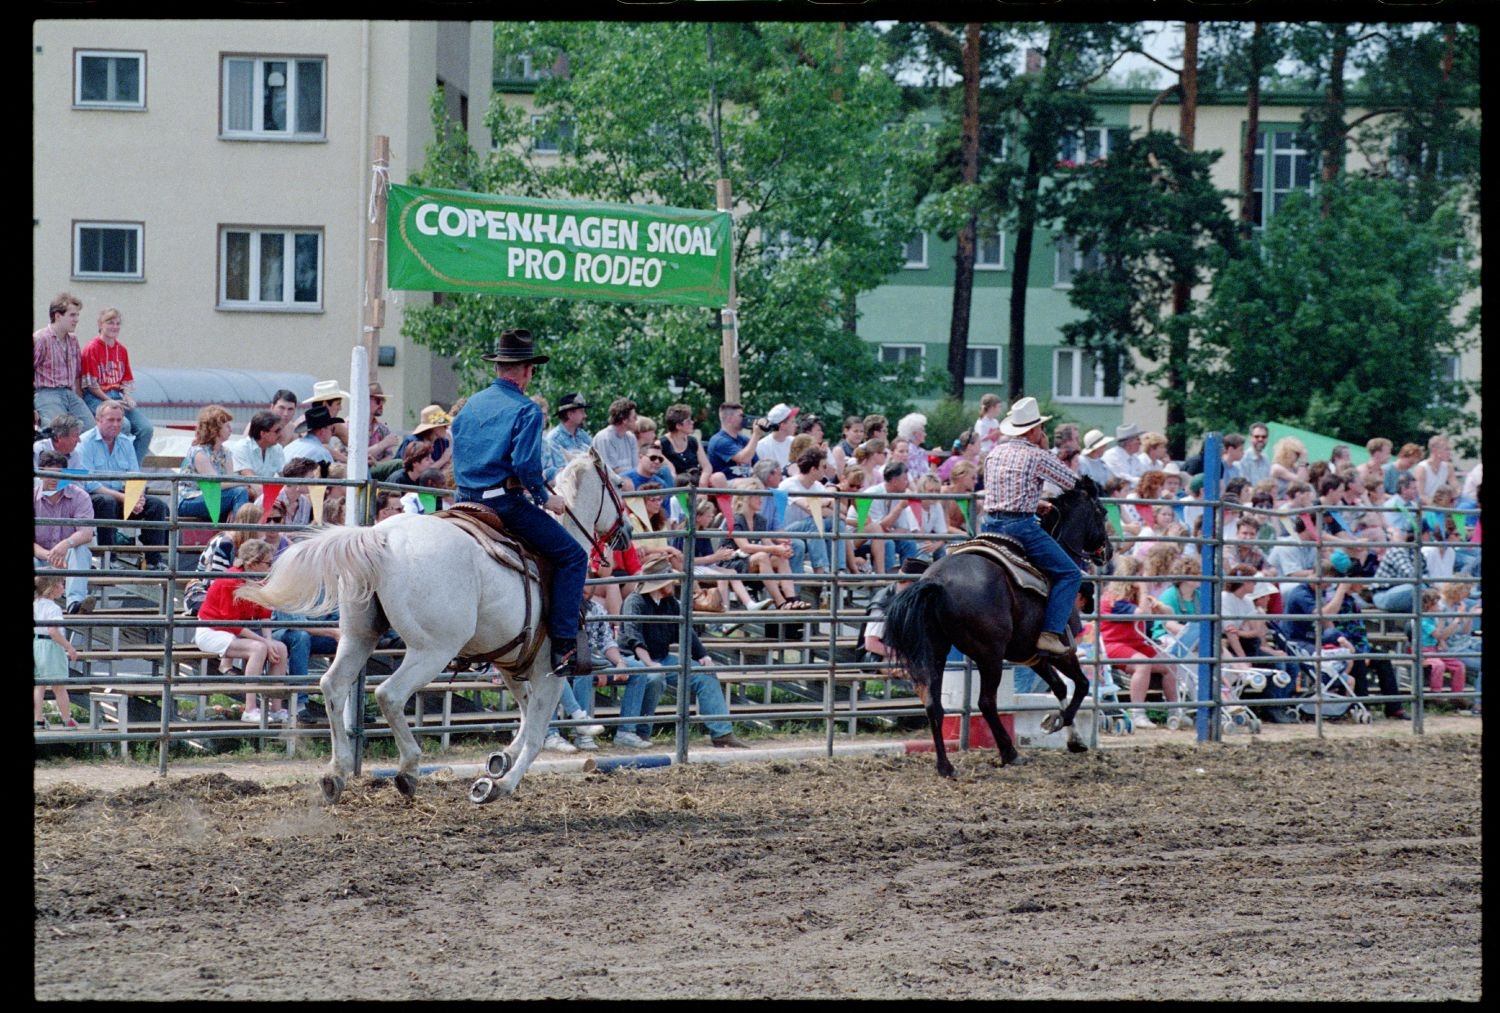 Fotografie: Rodeo Mania 1993 auf dem Festplatz Deutsch-Amerikanisches Volksfest in Berlin-Dahlem